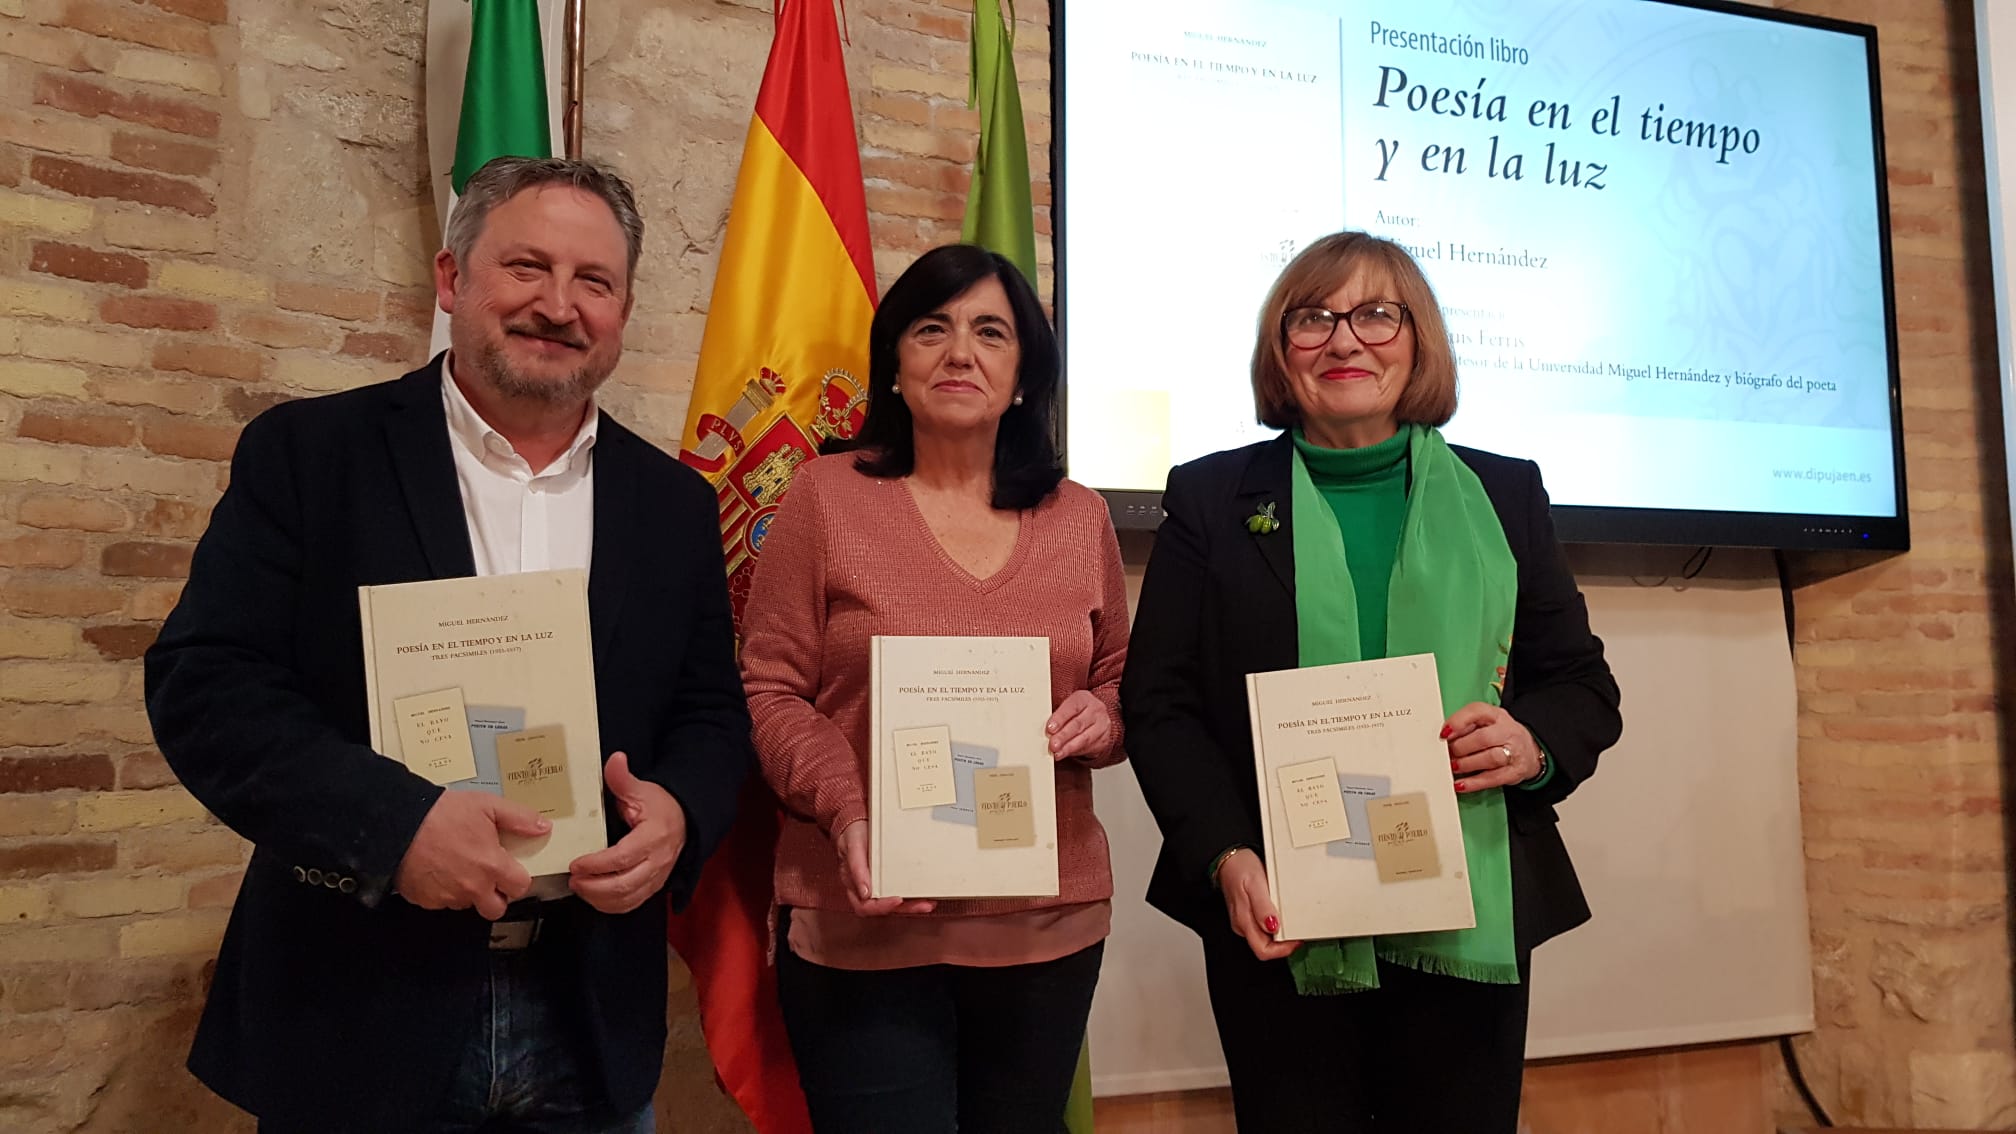 José Luis Ferris, Francisca Medina y Adela Tarifa en la presentación de "Poesía en el tiempo y en la luz". JPG de 206 KB